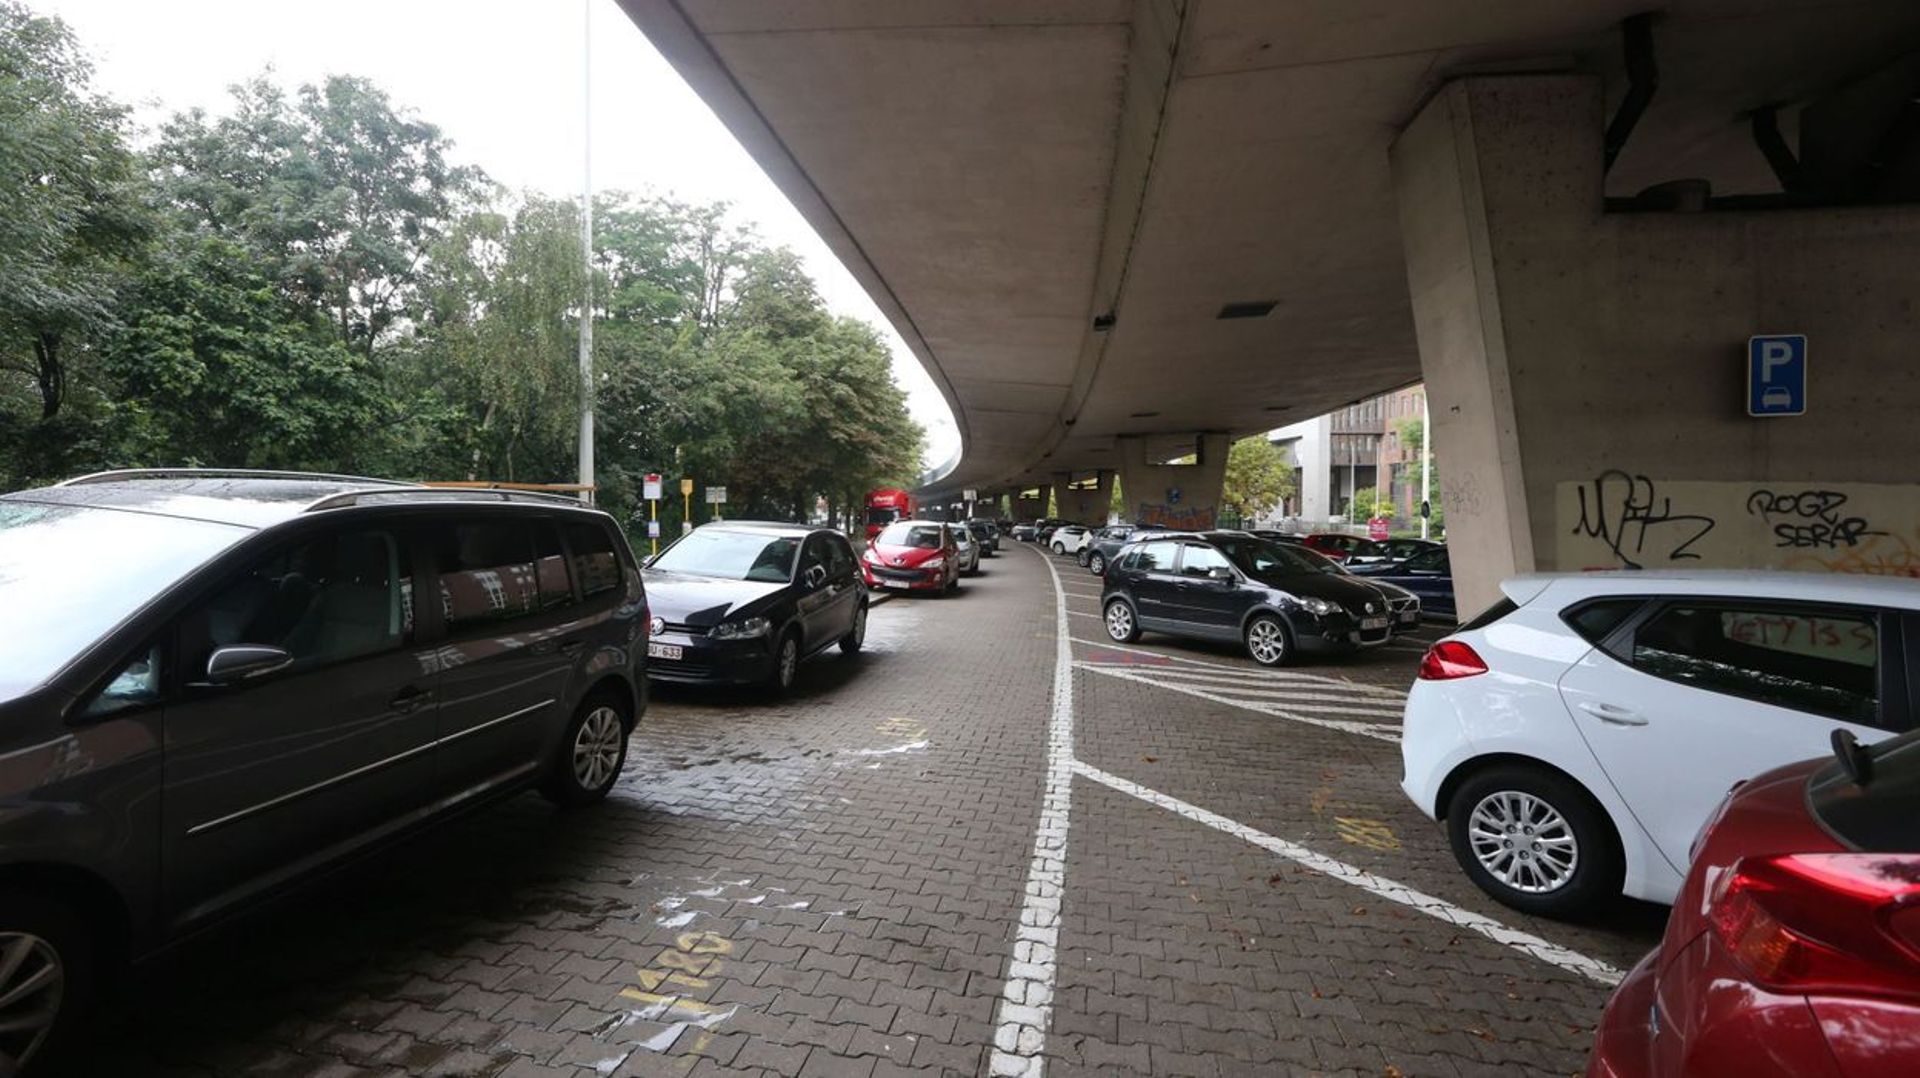 Iillustation: Selon Touring, le nombre de places de parking disponibles en surface a fortement baissé entre 2014 et 2020. 